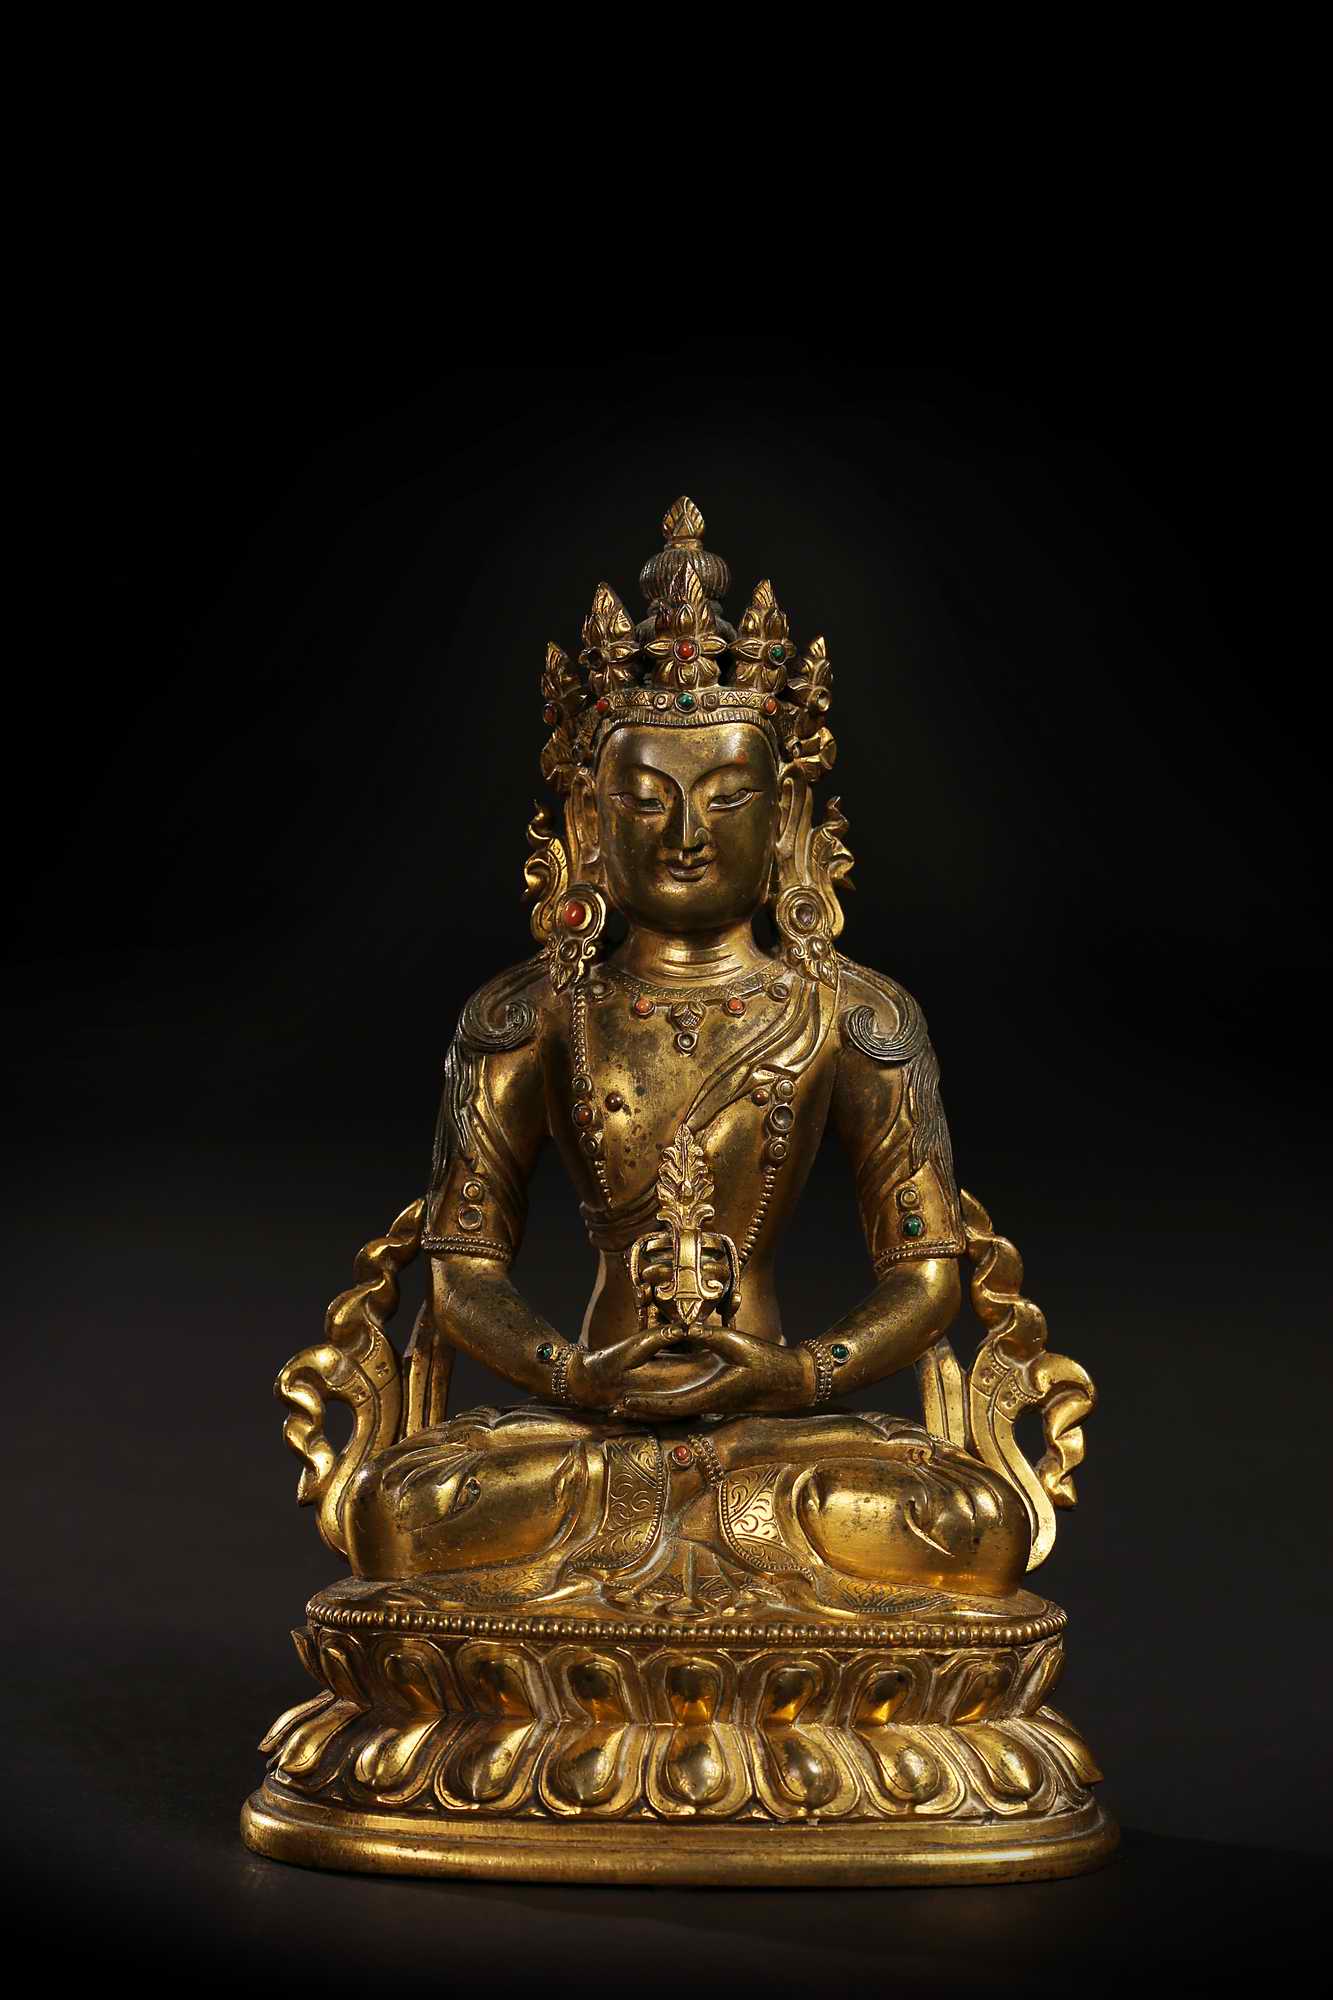 内地汉藏风格 18世纪长寿佛佛像